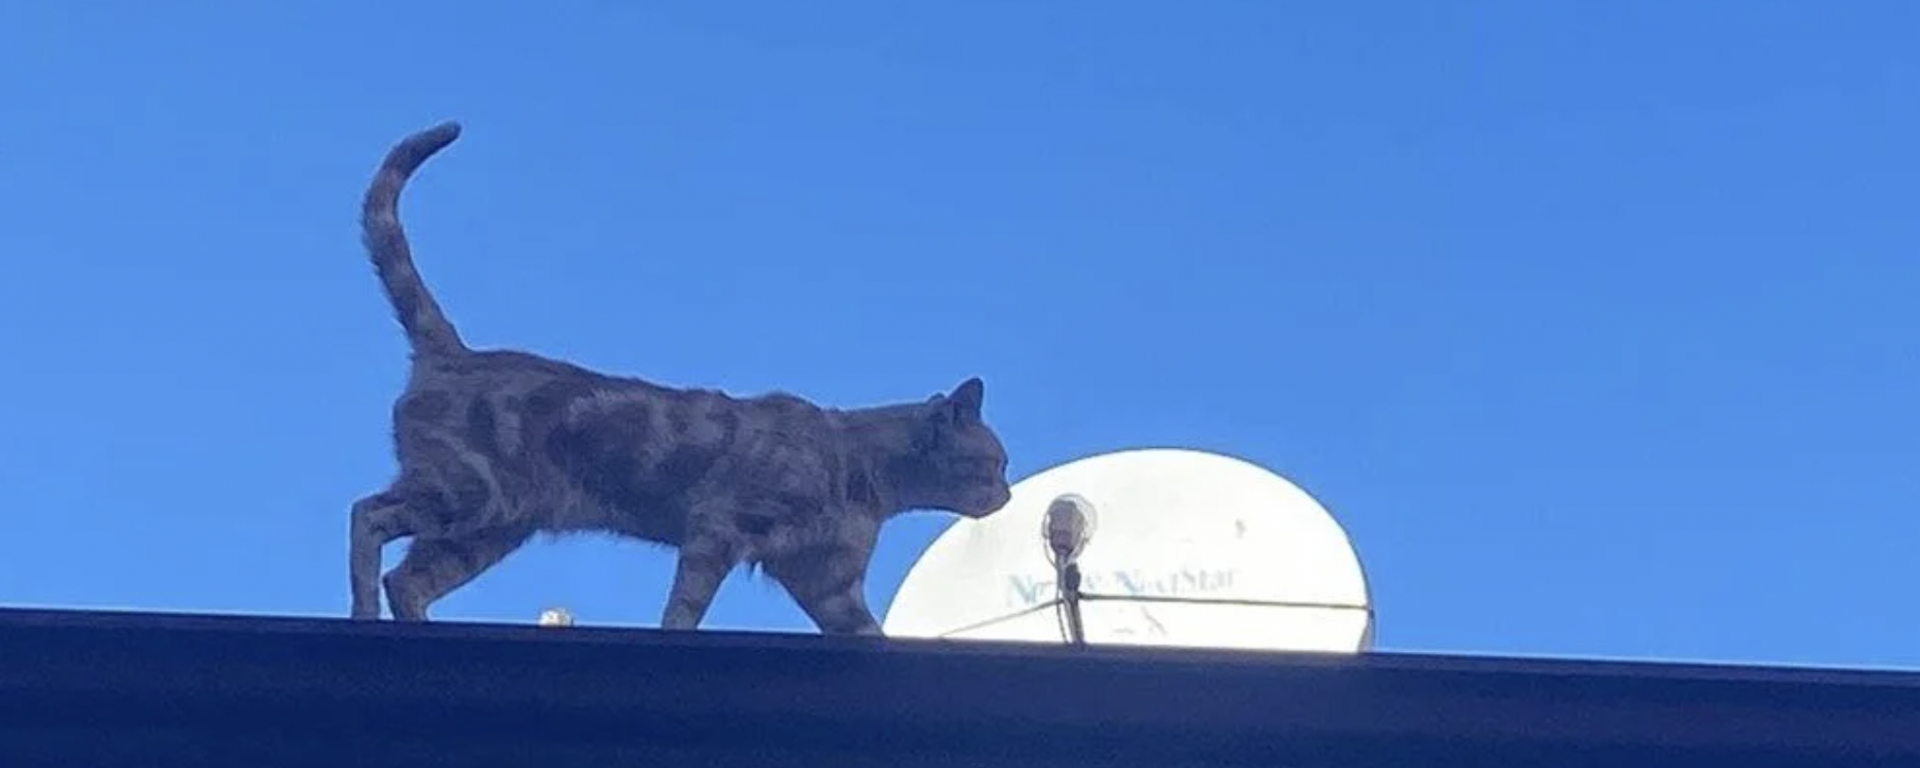 Çorum’un Sungurlu ilçesinde 4 yıldır bir binanın çatısında yaşayan ve tüm çabalara rağmen indirilemeyen kedi, ilçenin maskotu oldu. Çatıyı terk etmeyen kediyi bölgedeki esnaf besliyor. - Sputnik Türkiye, 1920, 27.10.2021